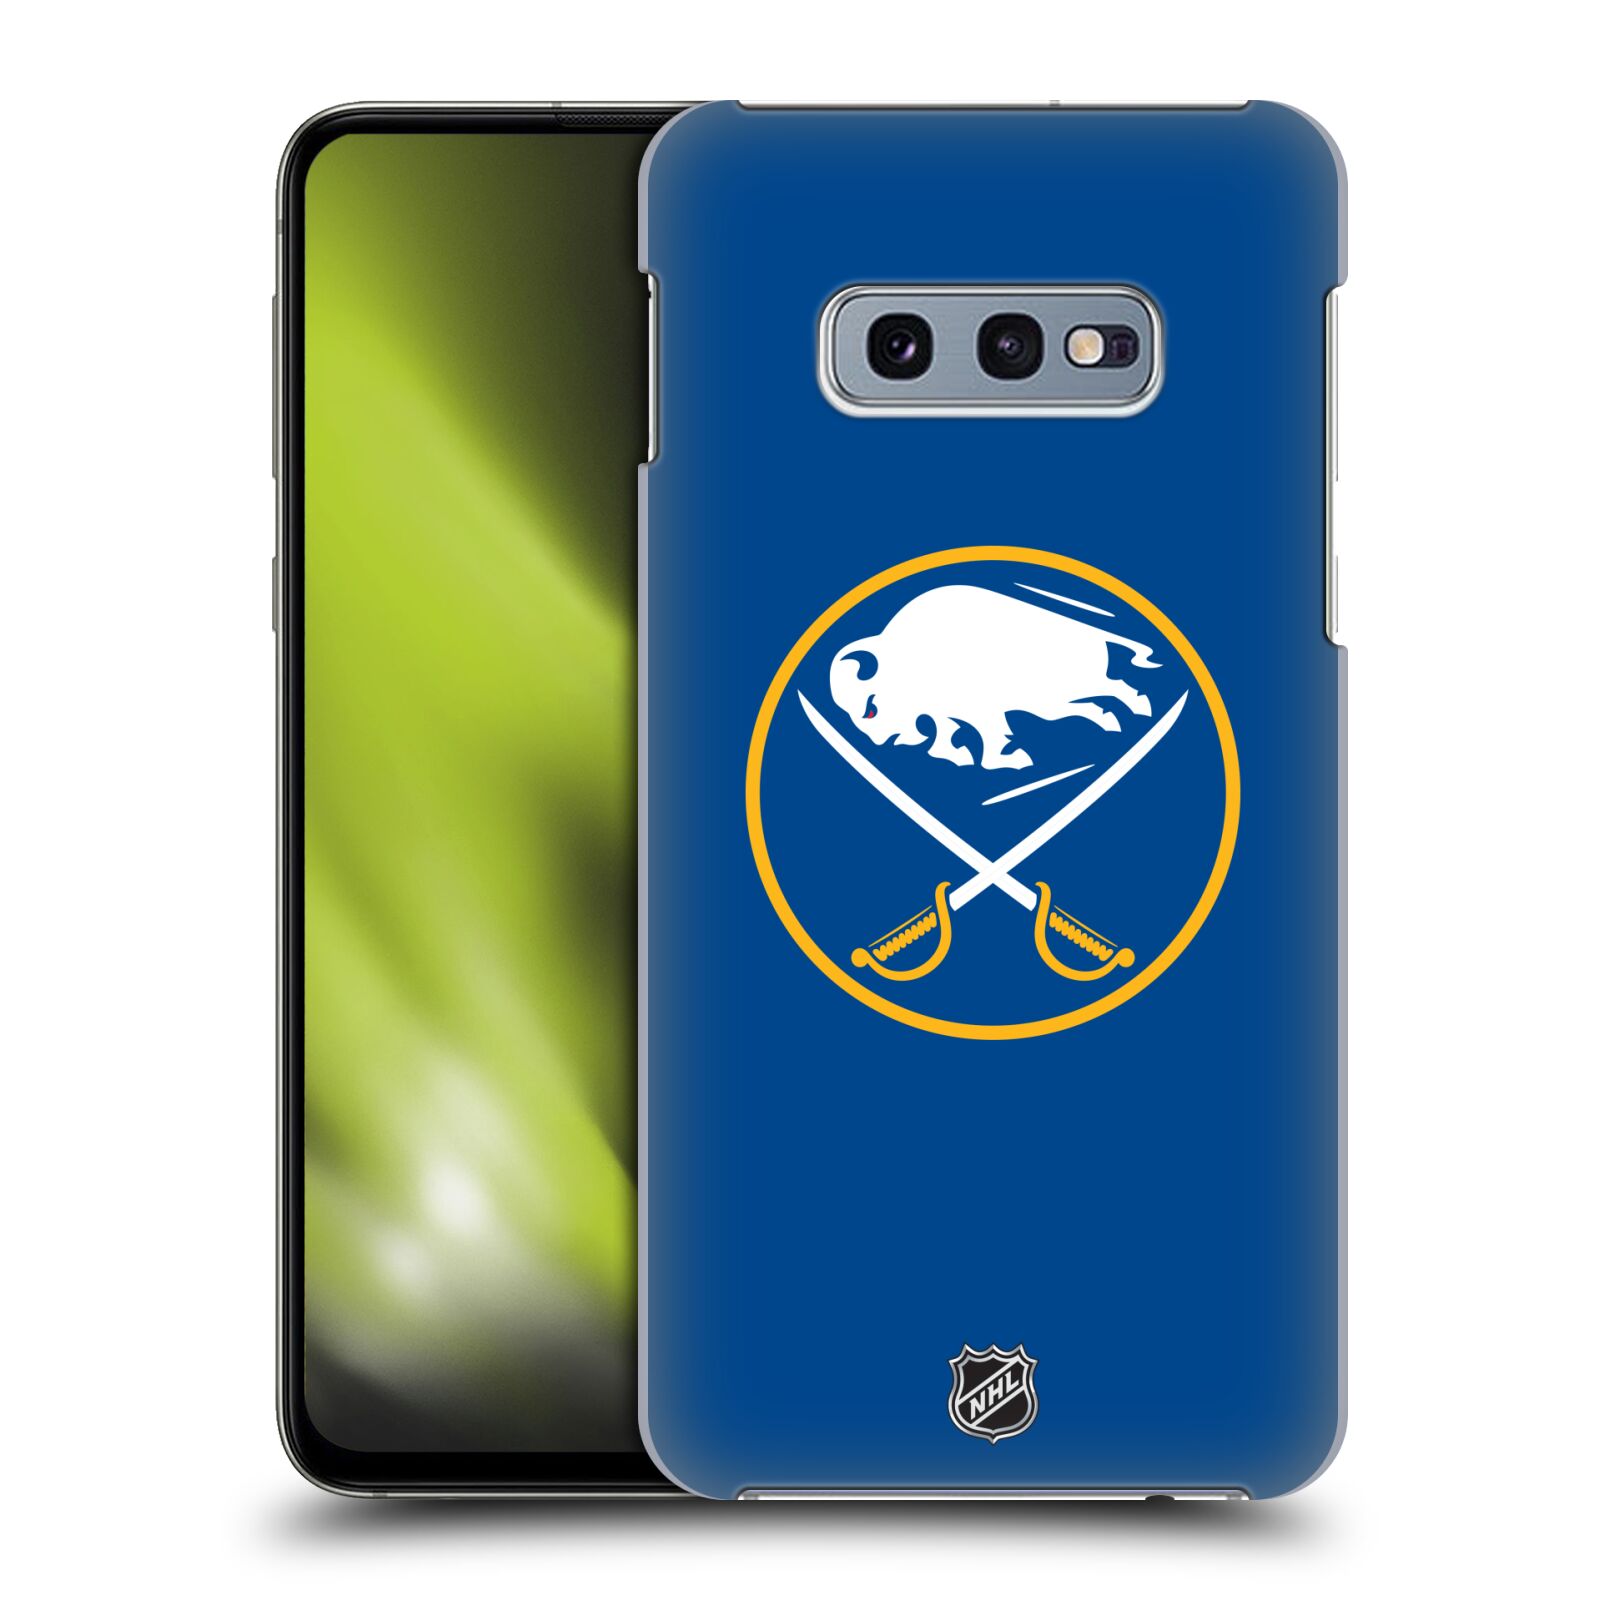 Pouzdro na mobil Samsung Galaxy S10e - HEAD CASE - Hokej NHL - Buffalo Sabres - modré pozadí